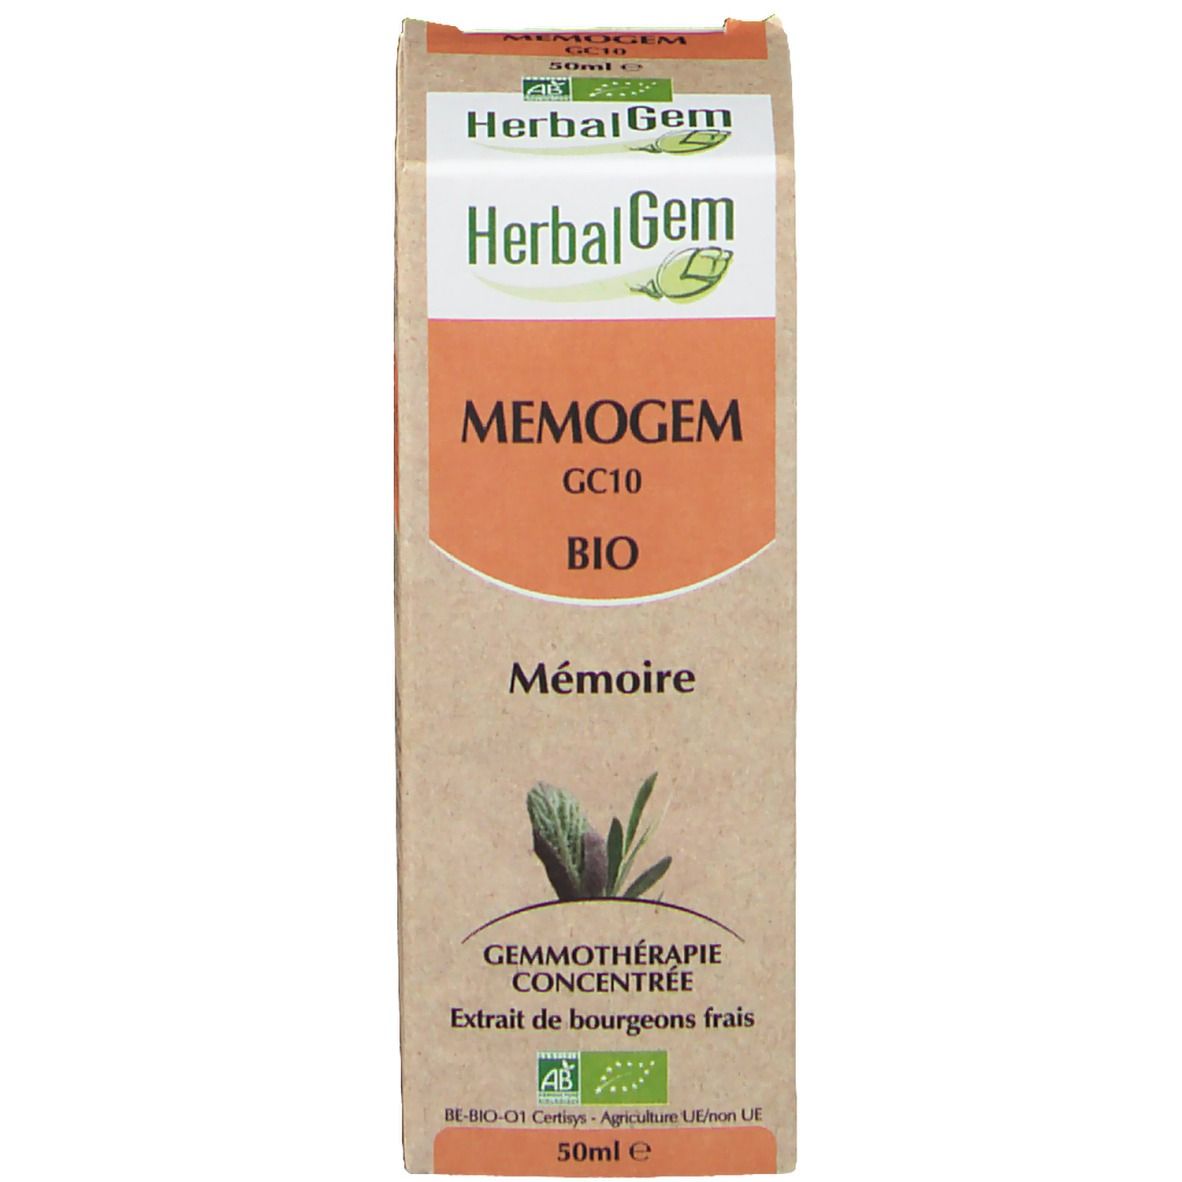 HerbalGem MEMOGEM